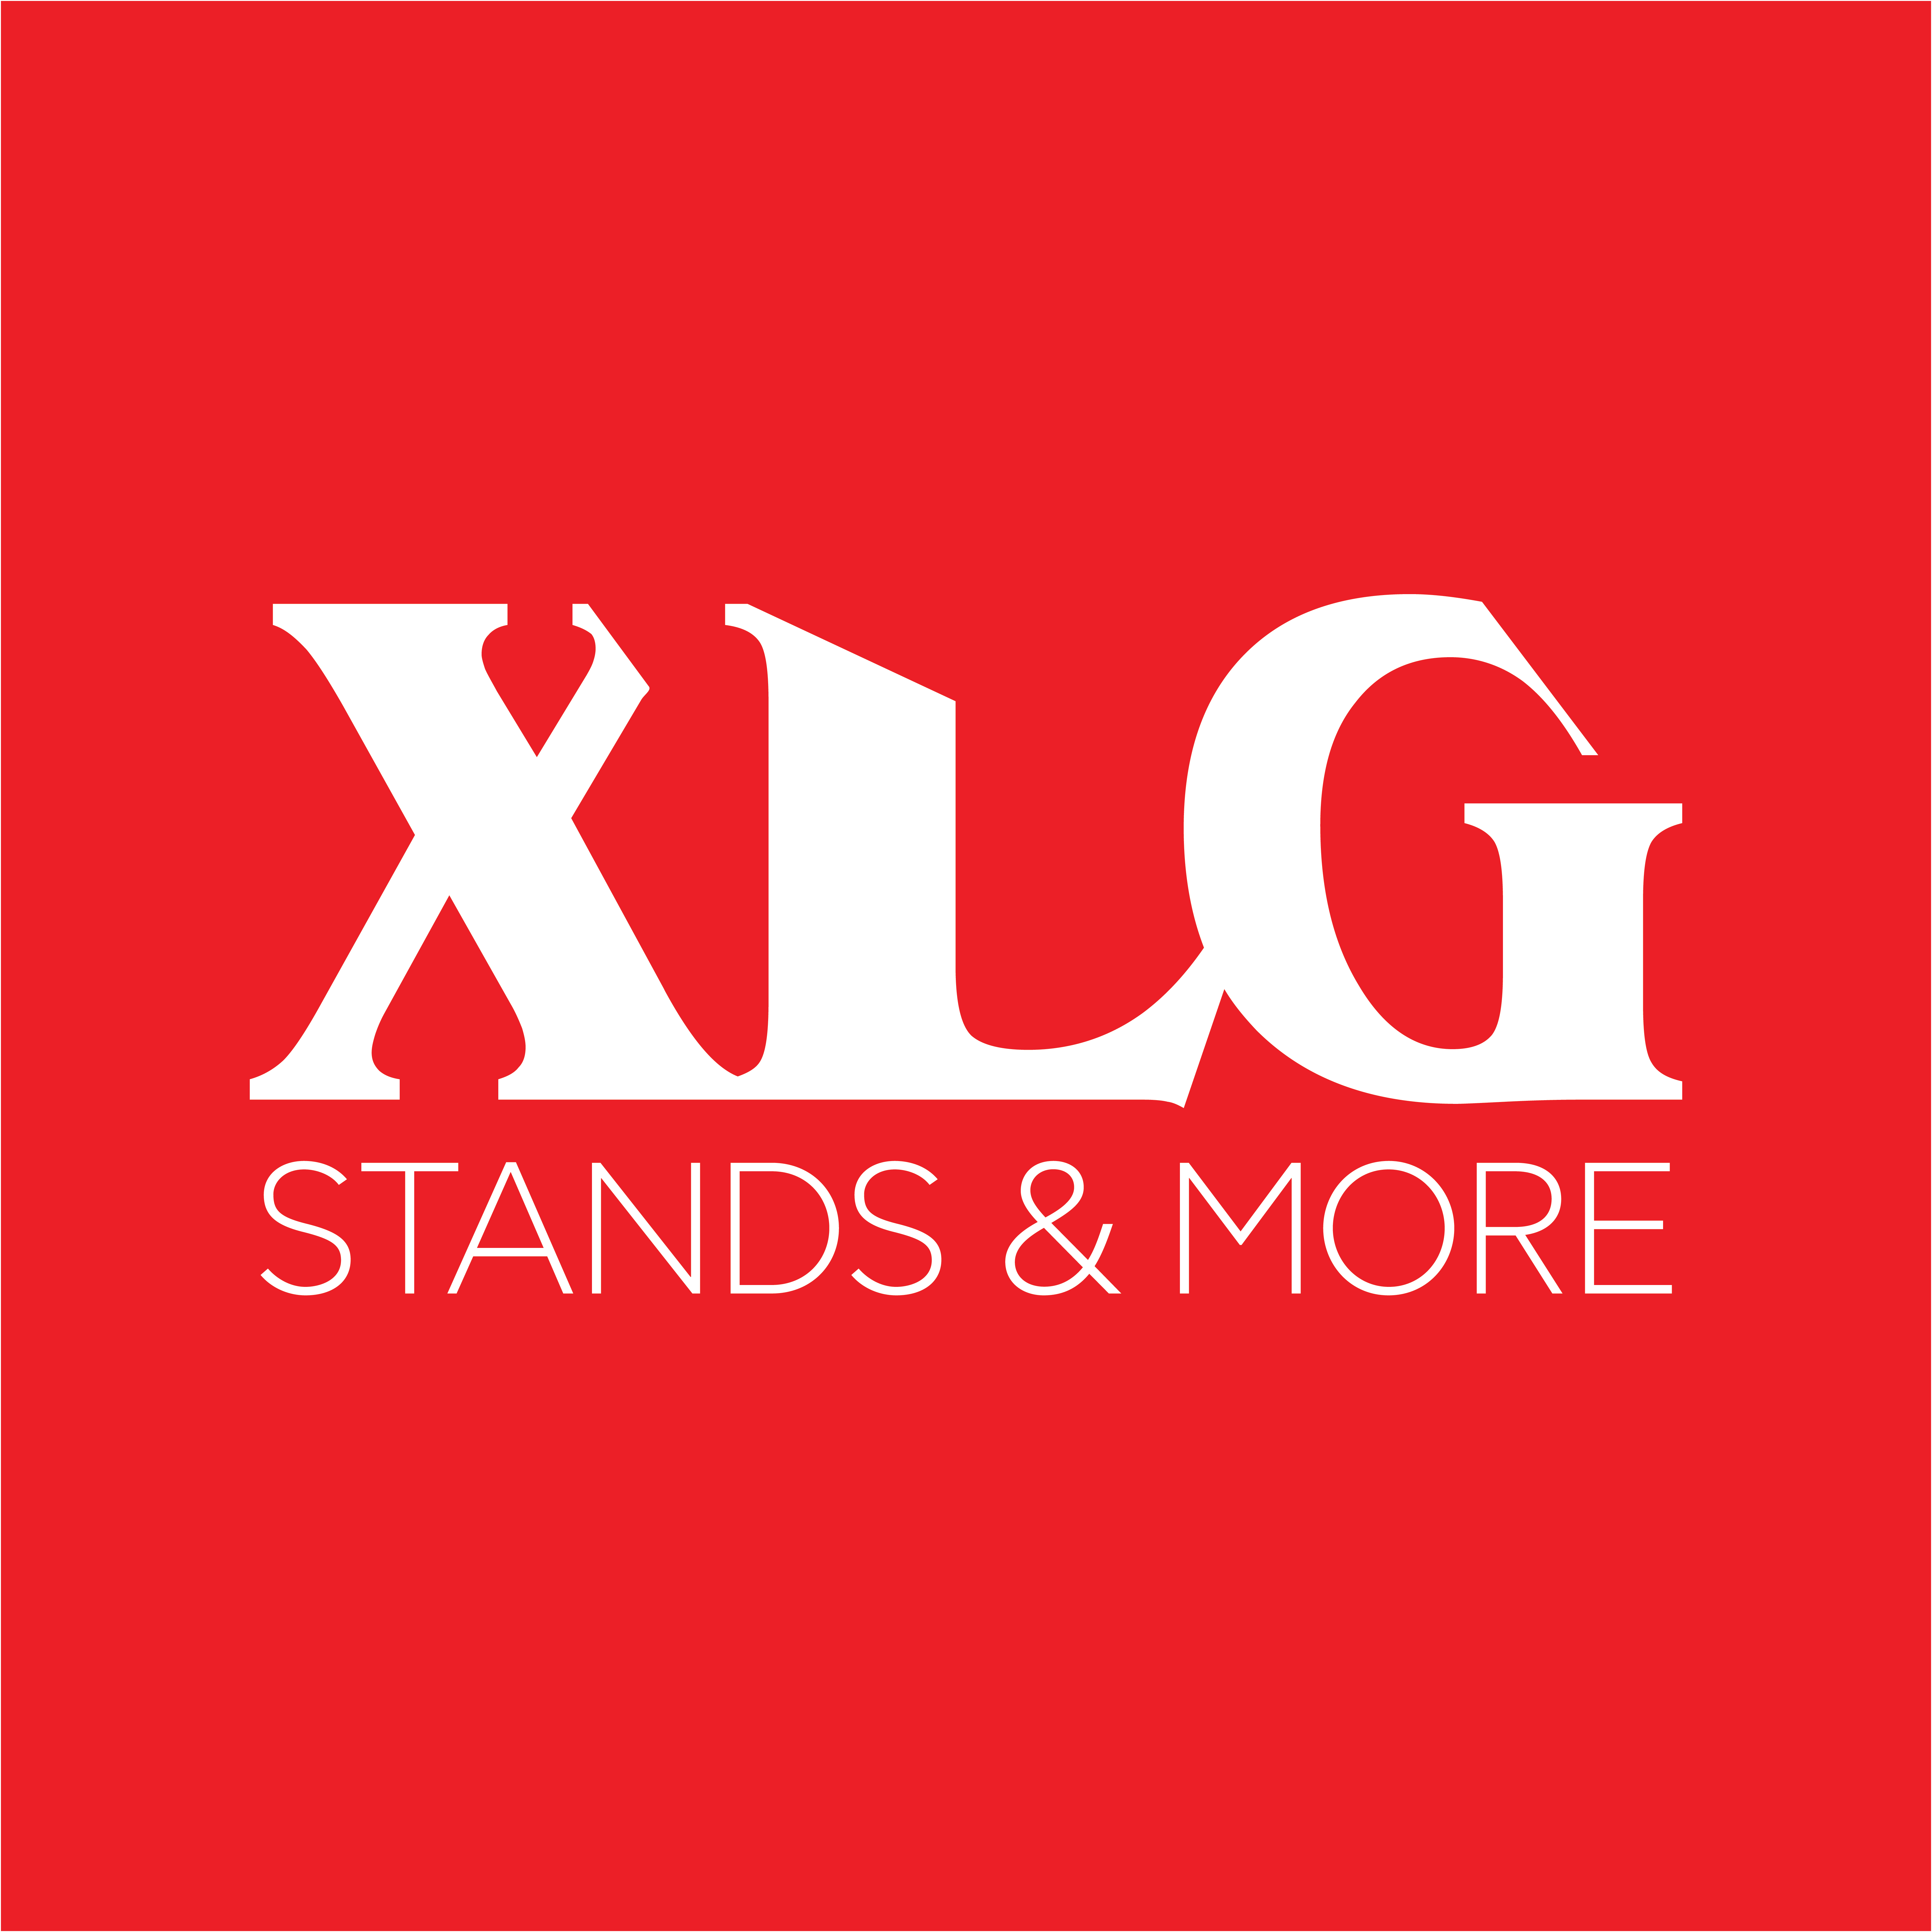 www.xlgstand.gr